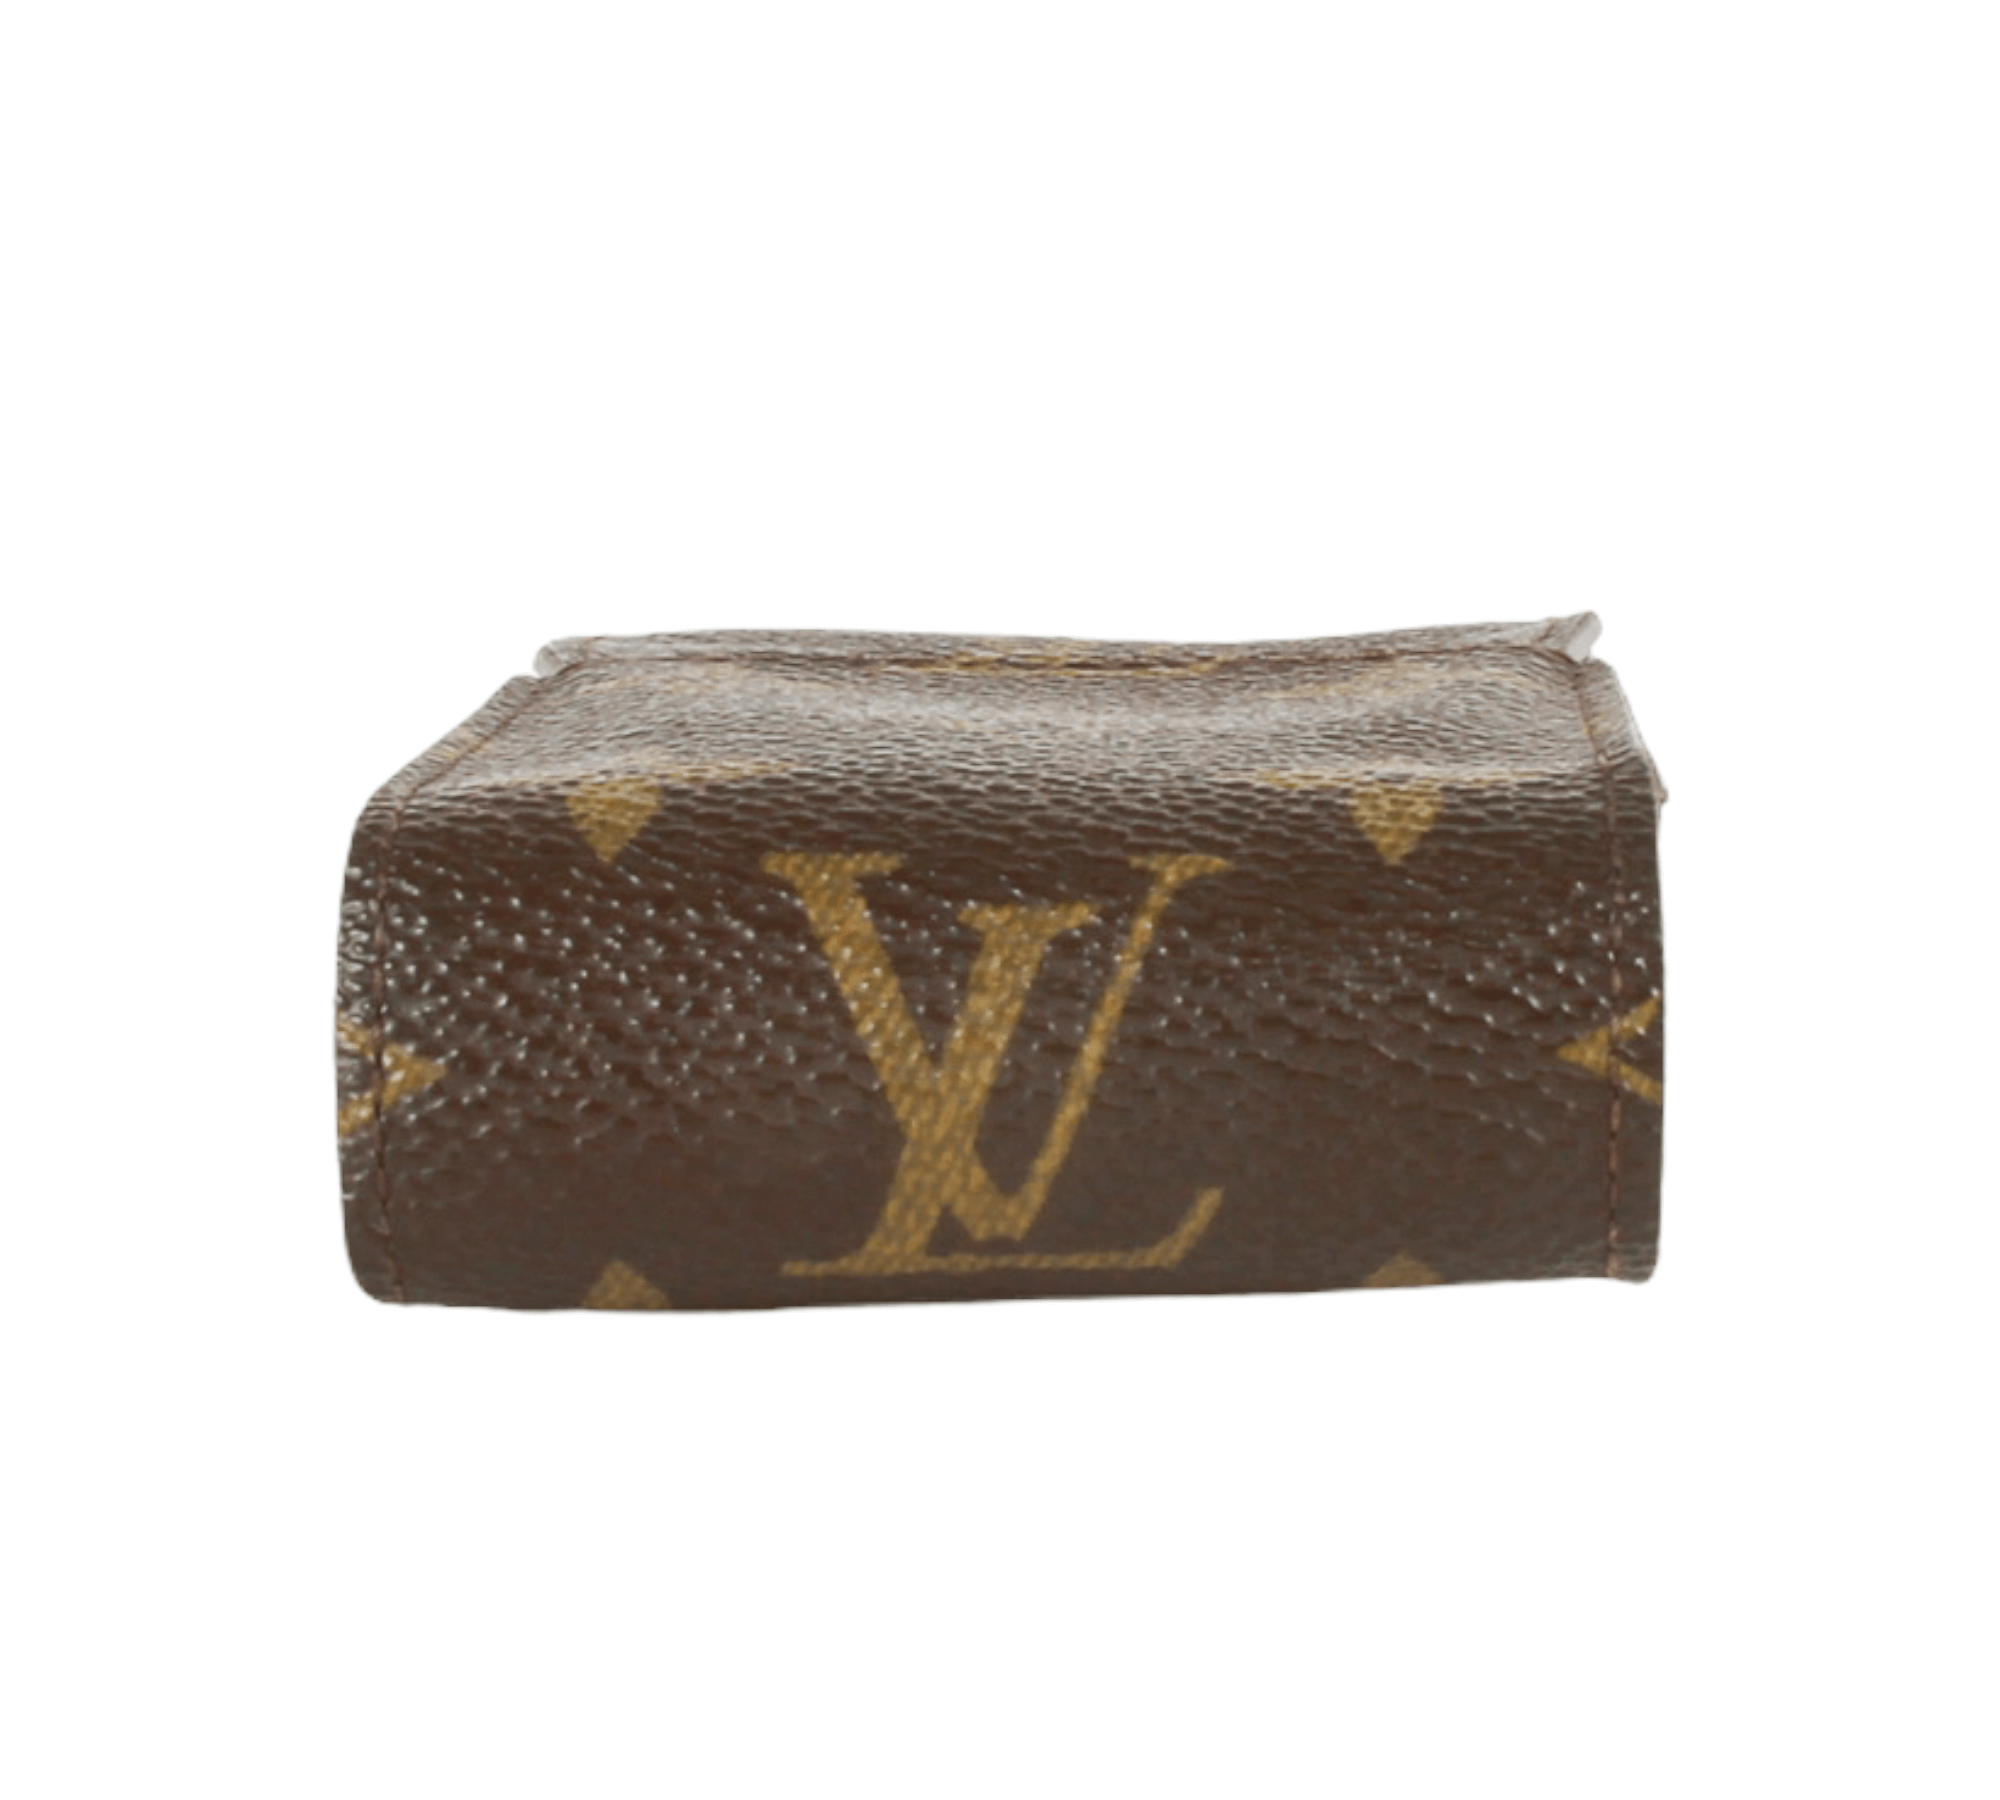 Authentic Louis Vuitton Damier Ebene Multicles 4 Key Case